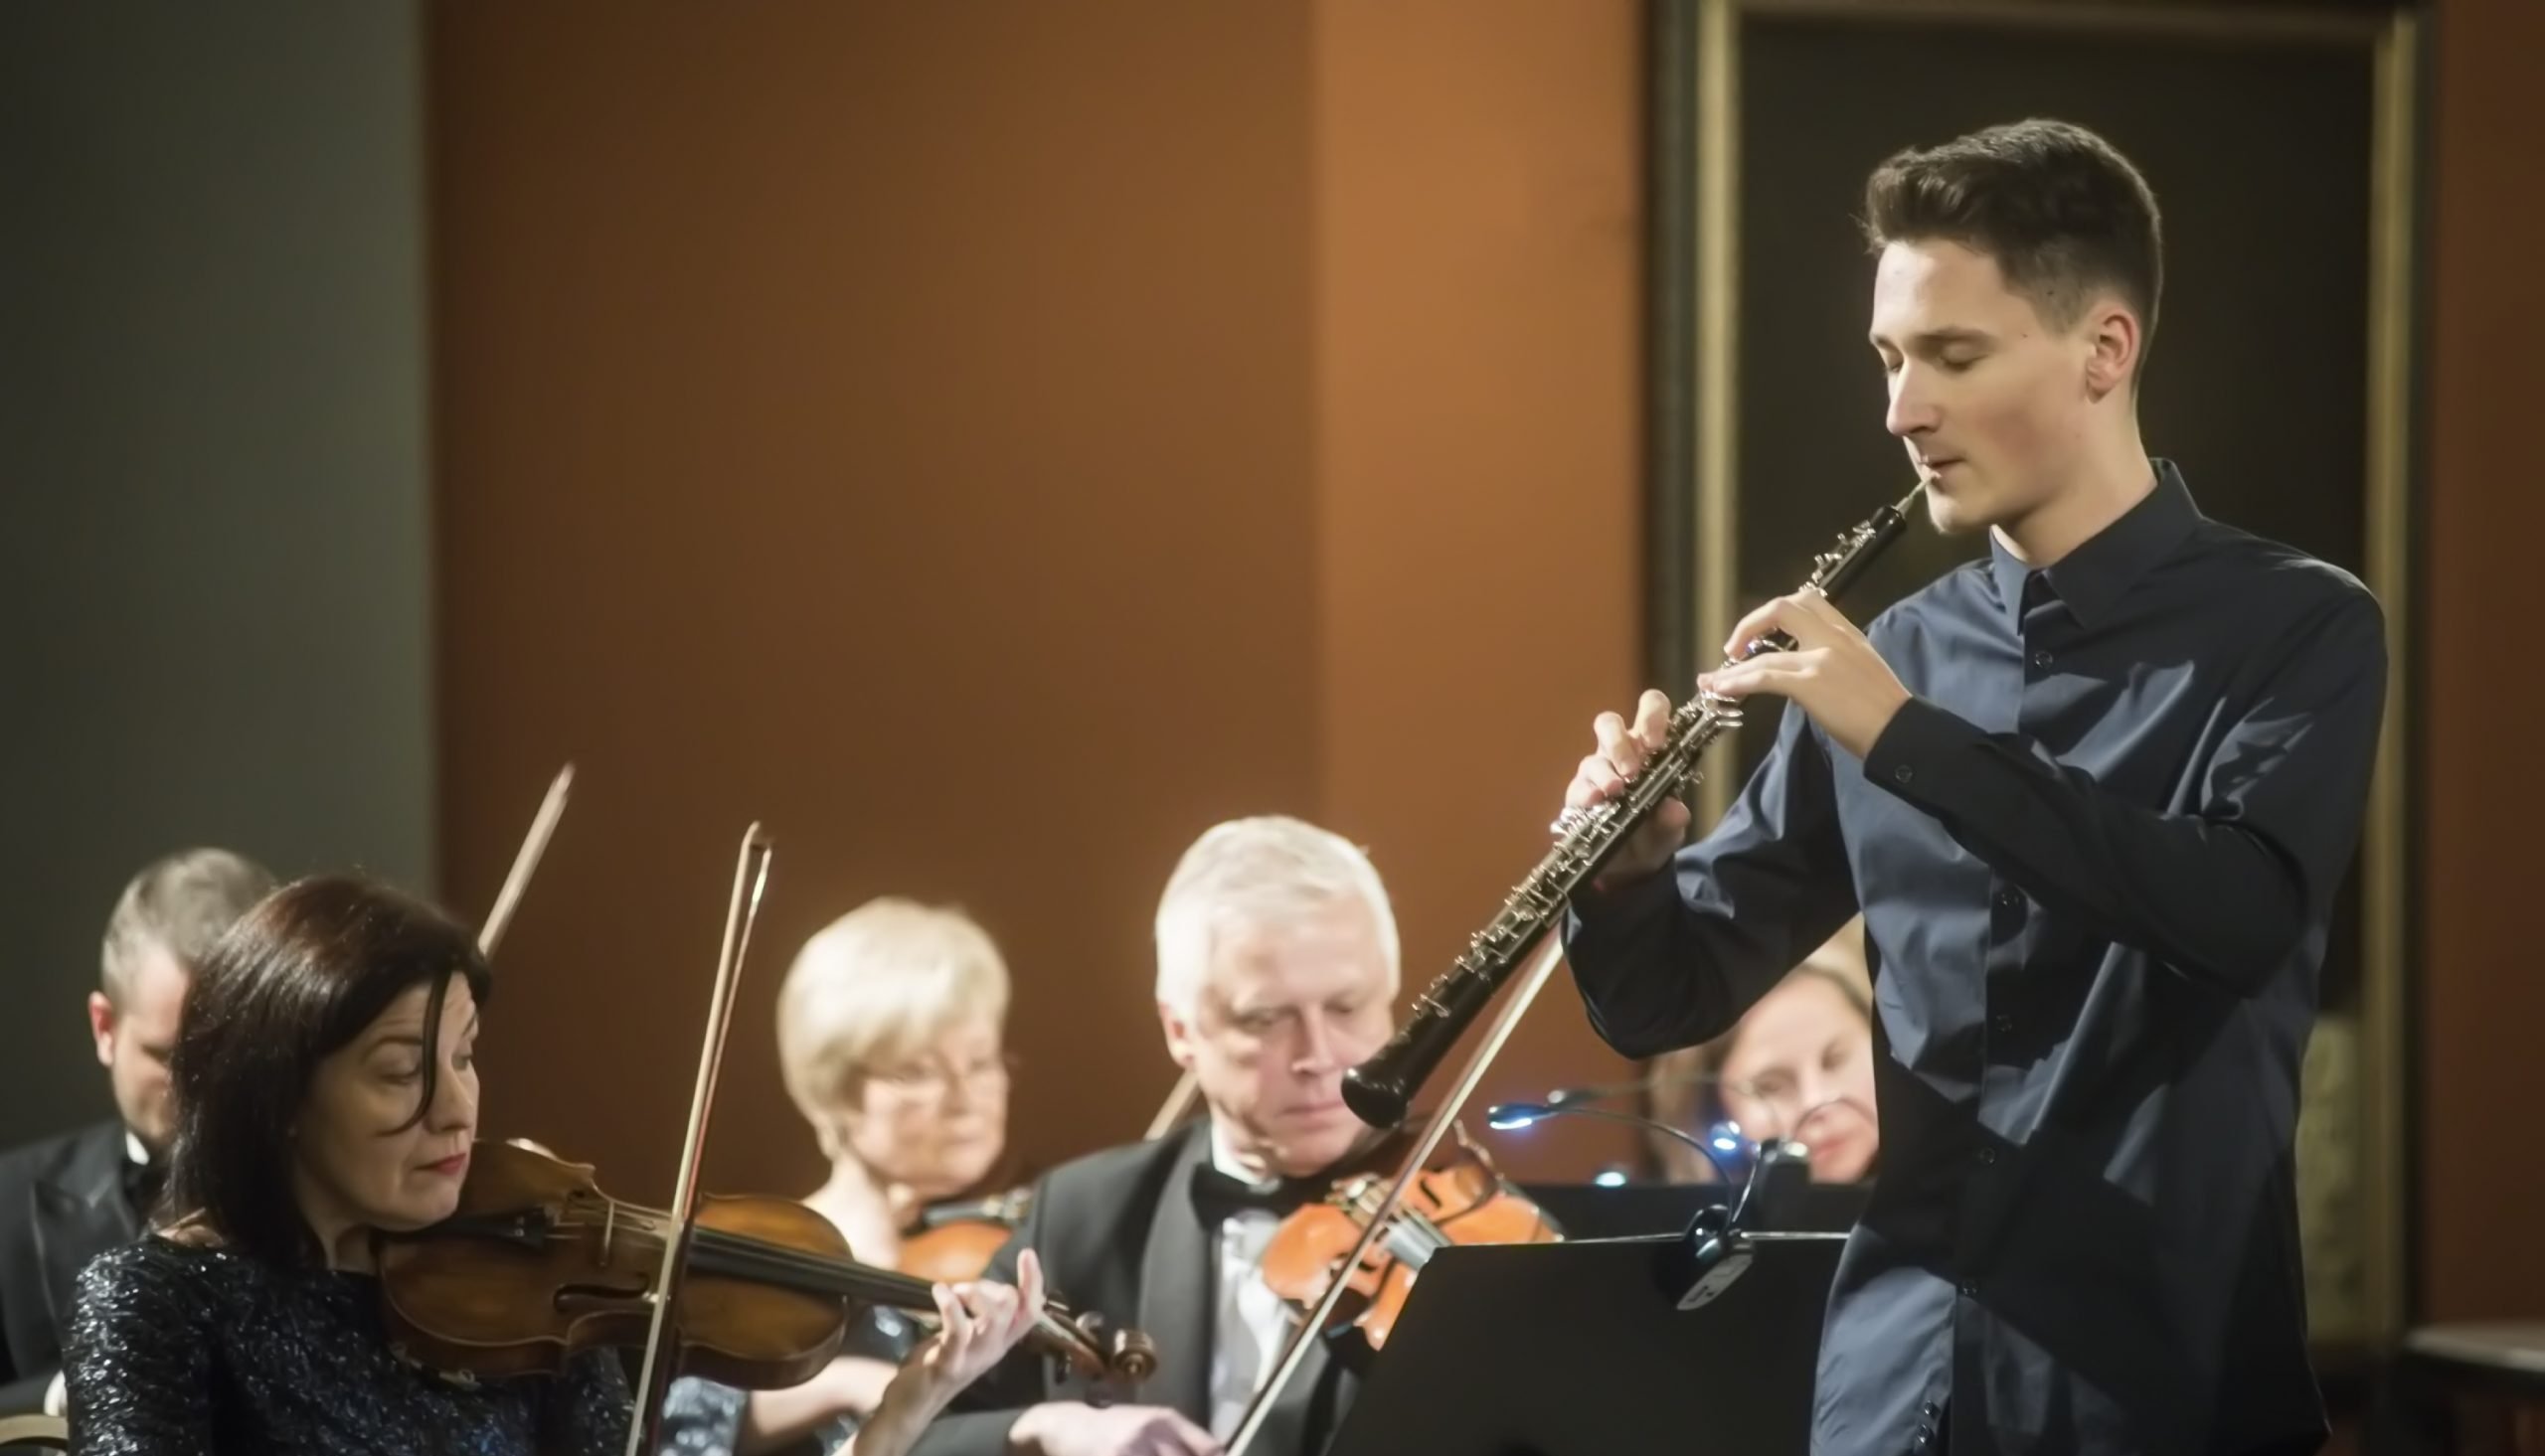 Filharmonijos skaitmeninėje koncertų salėje – žiemos klasika ir premjera